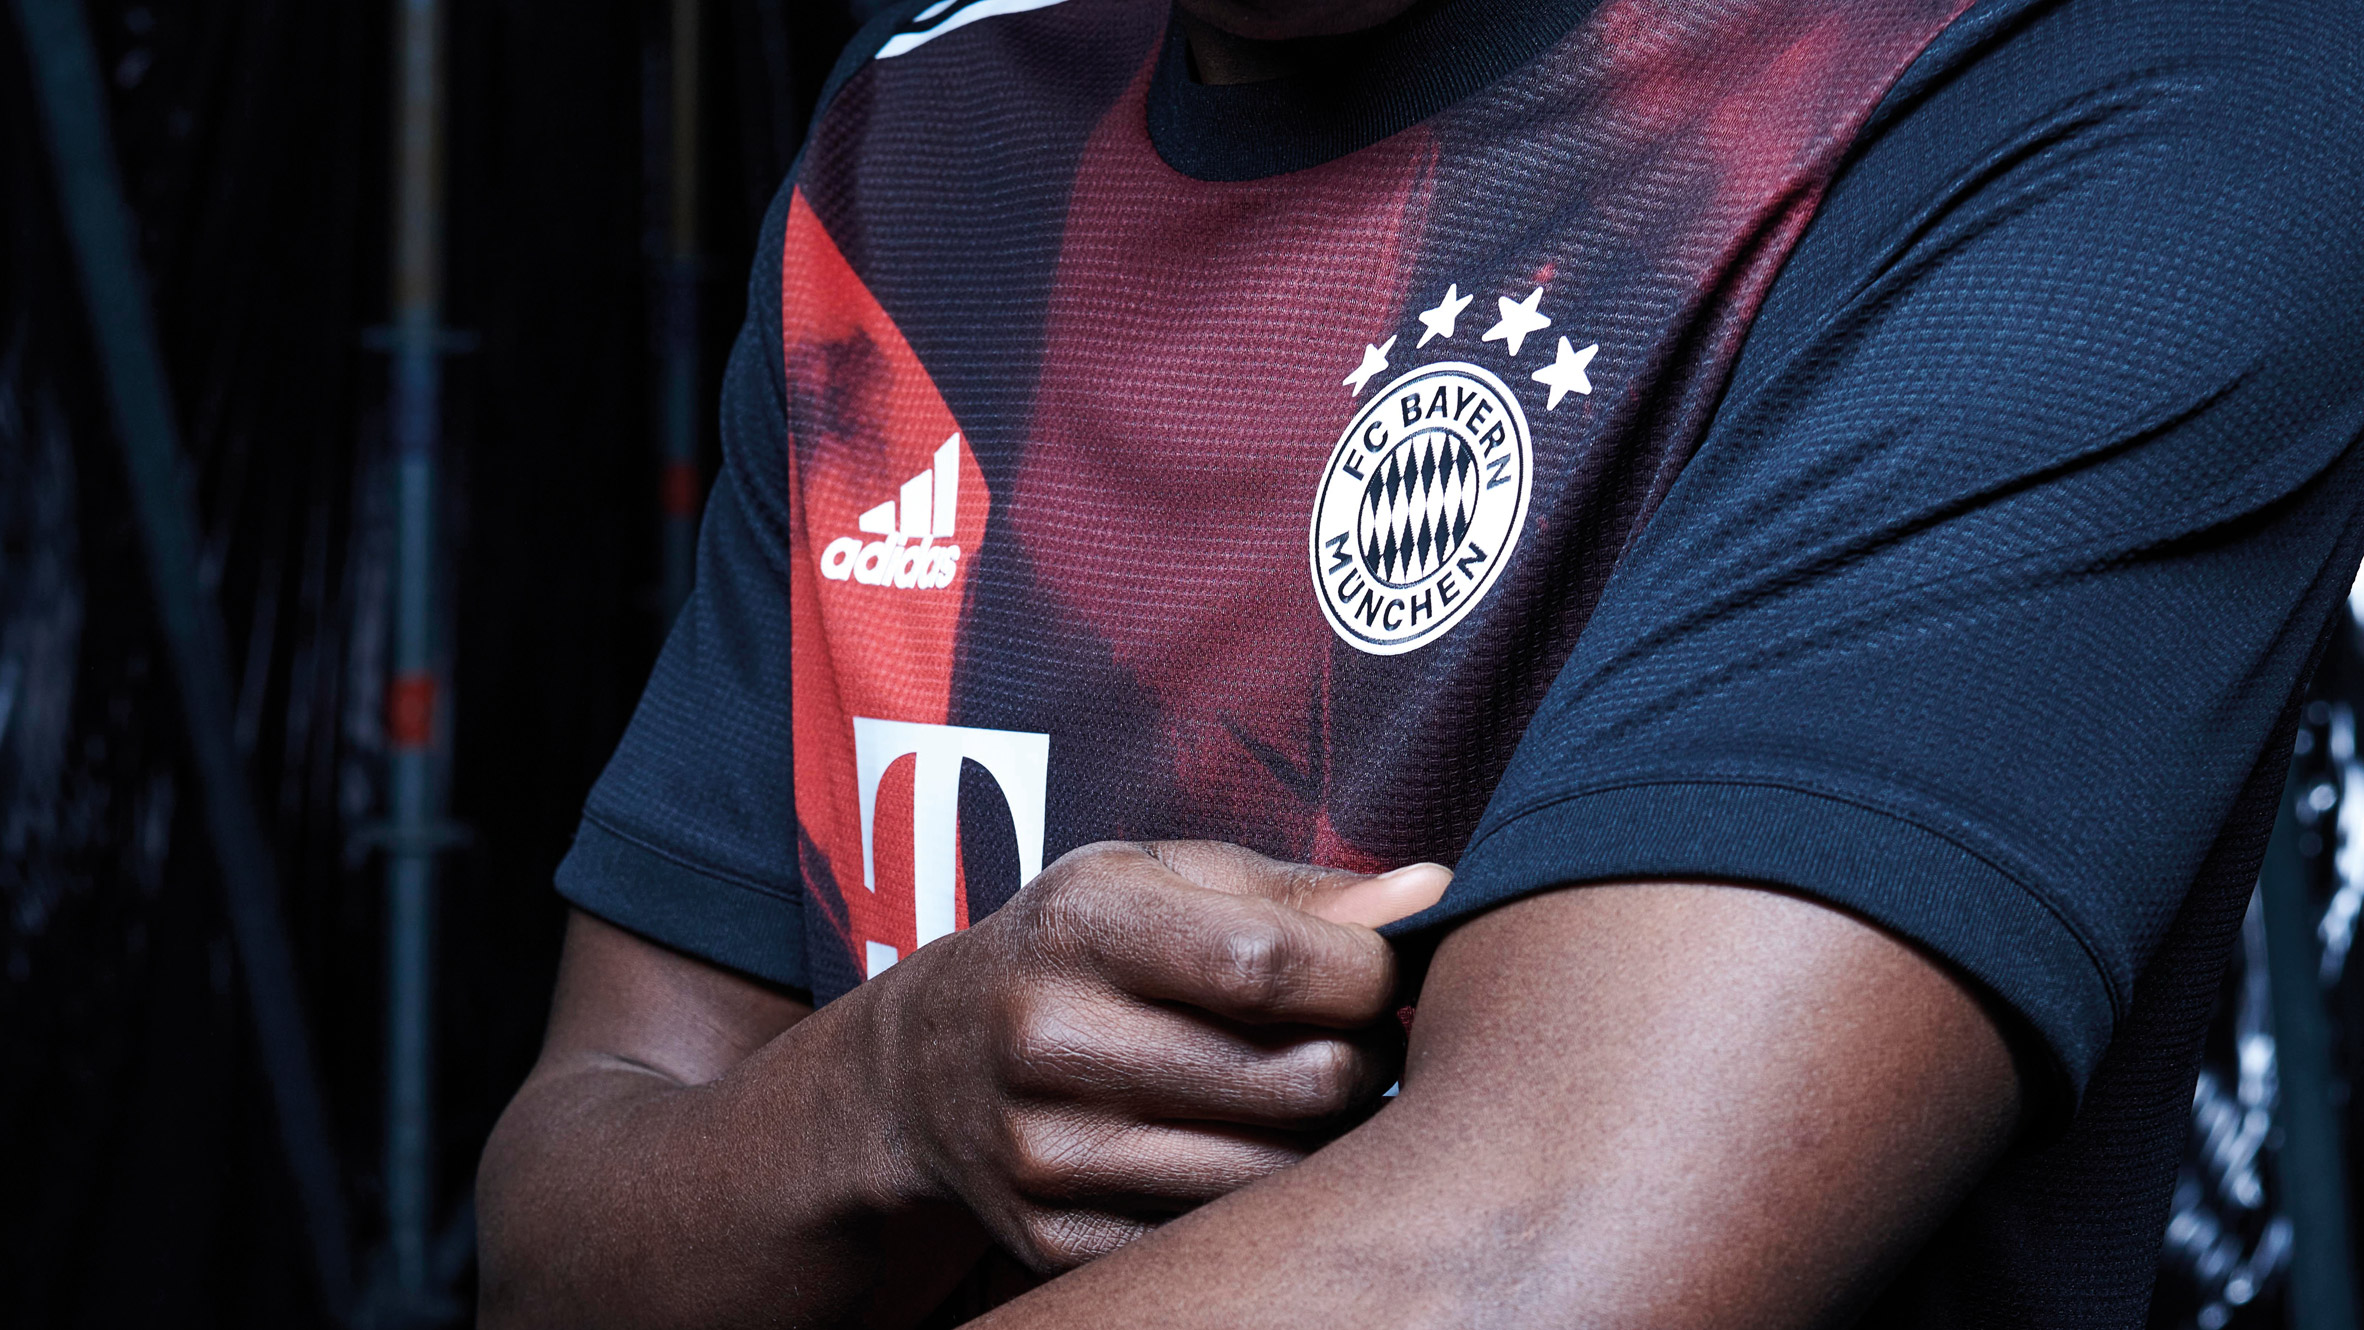 FC Bayern Munich's third football kit by Adidas